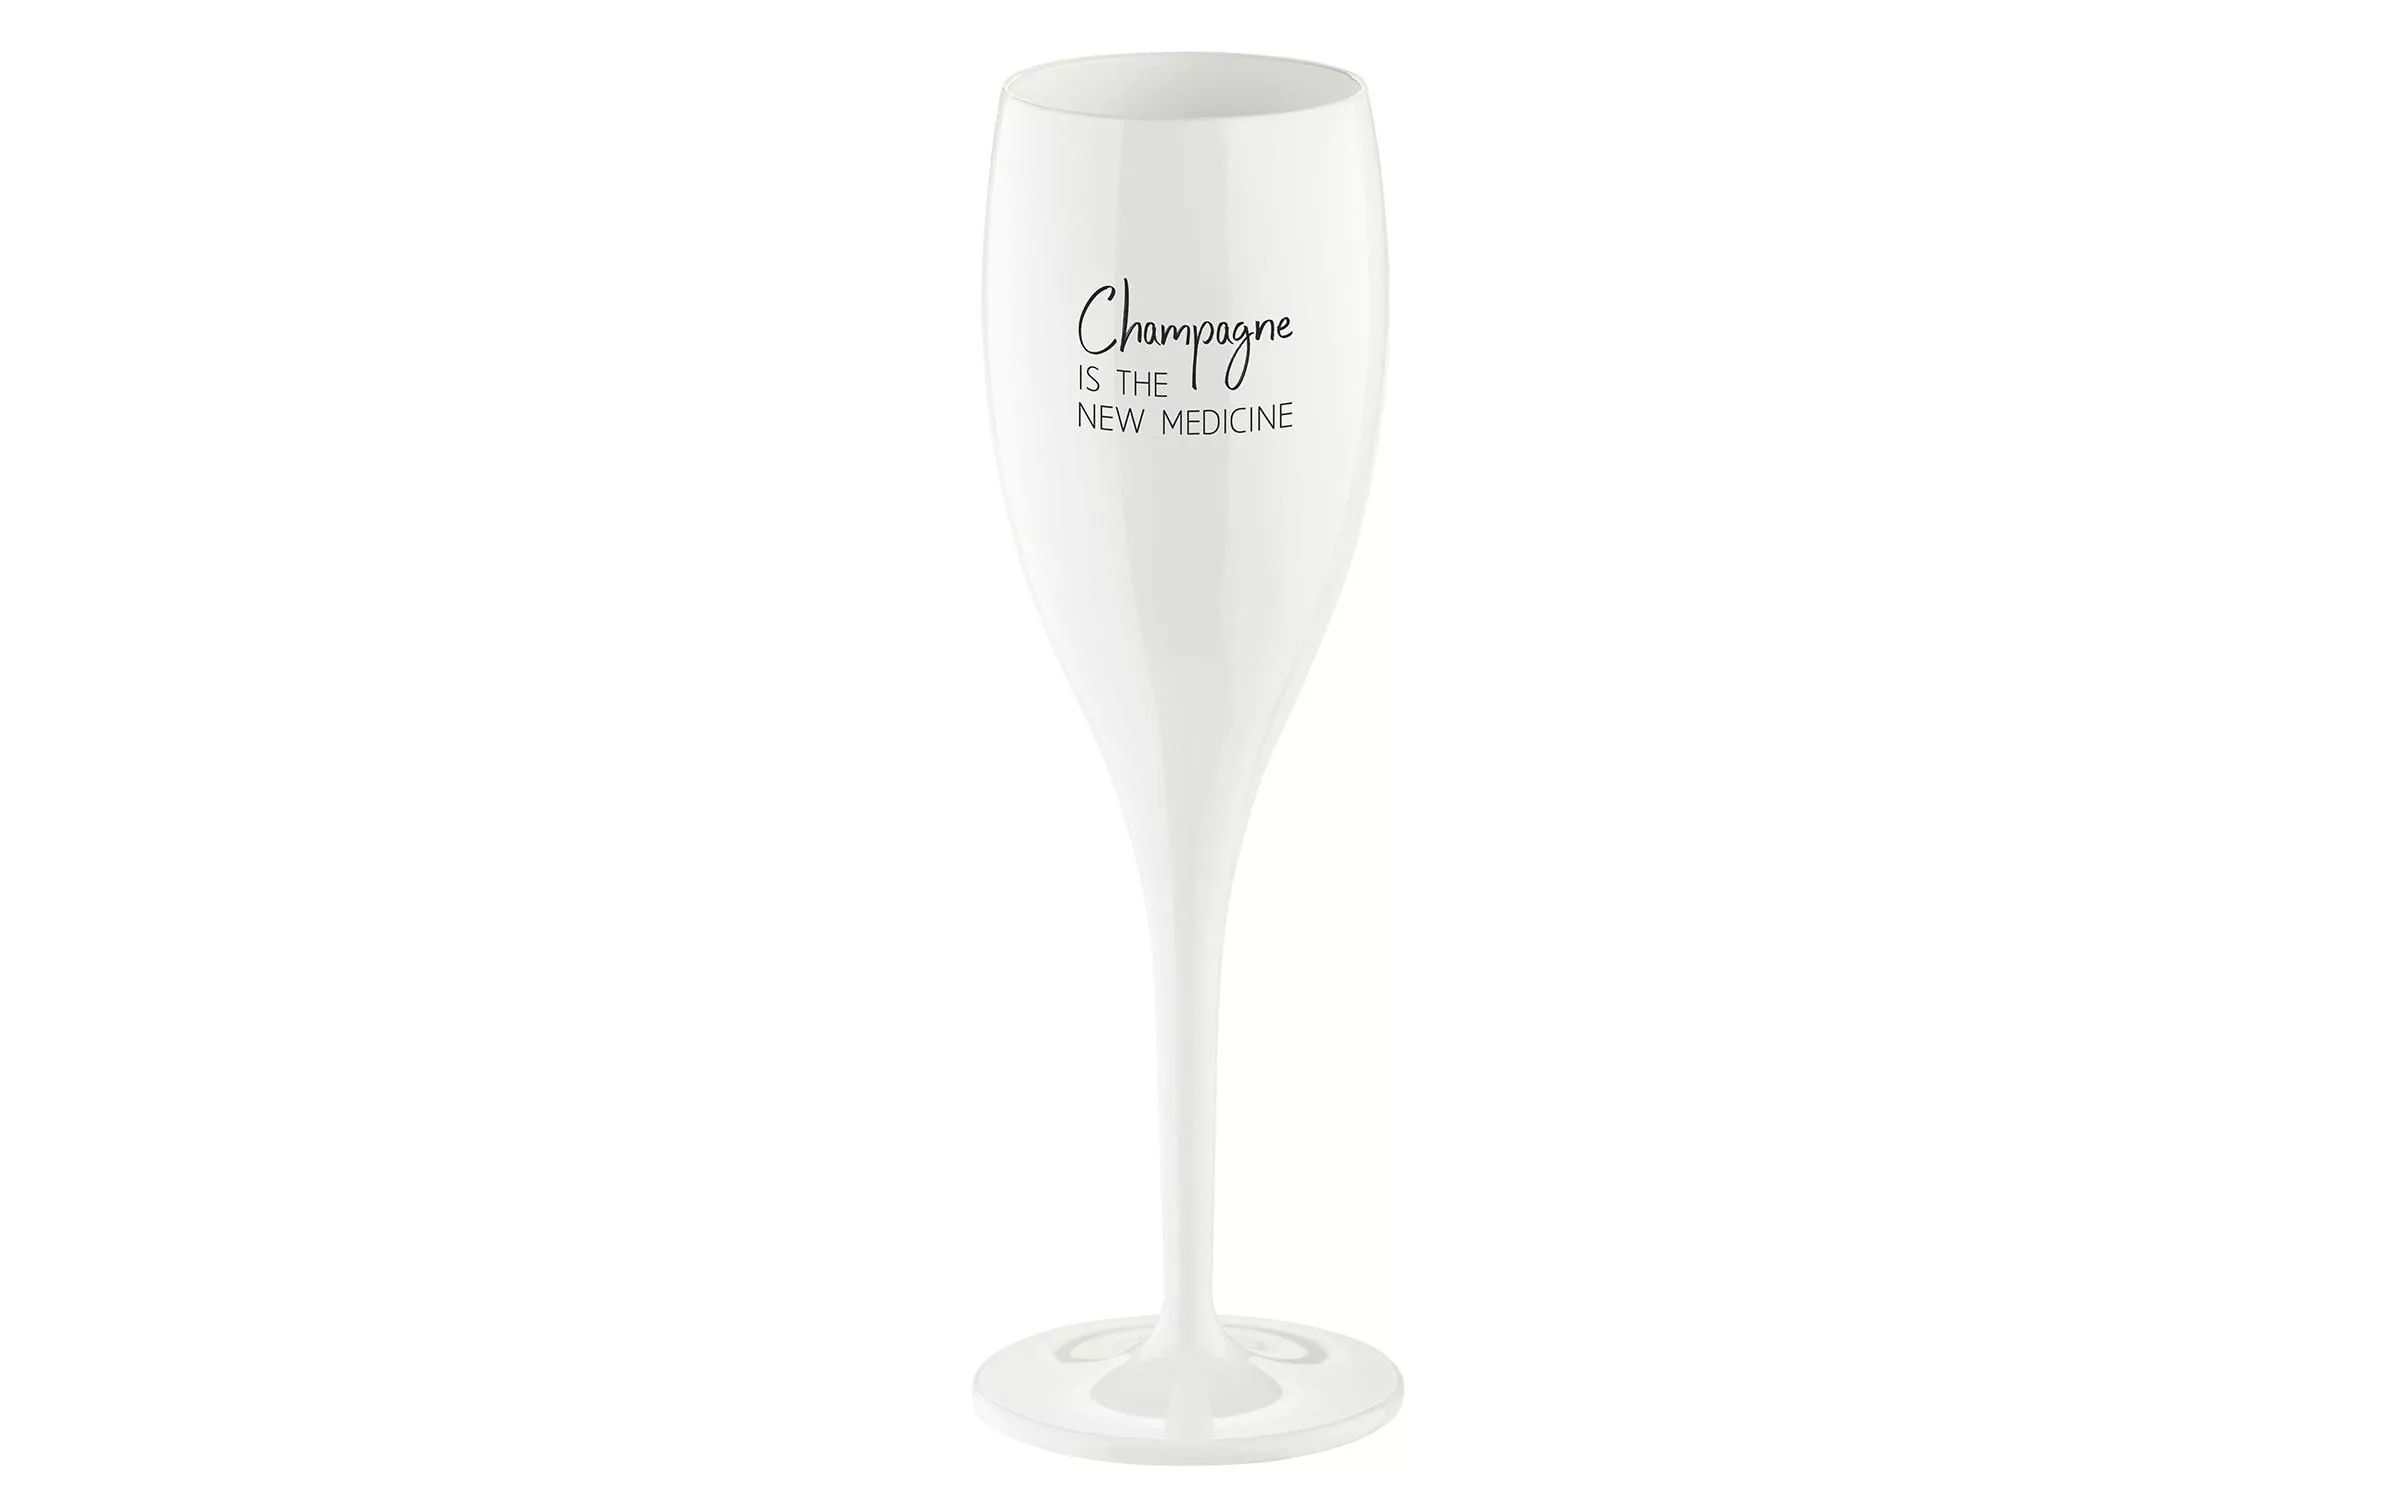 Sektglas Superglas Champagne is 100 ml, 1 Stück, Weiss